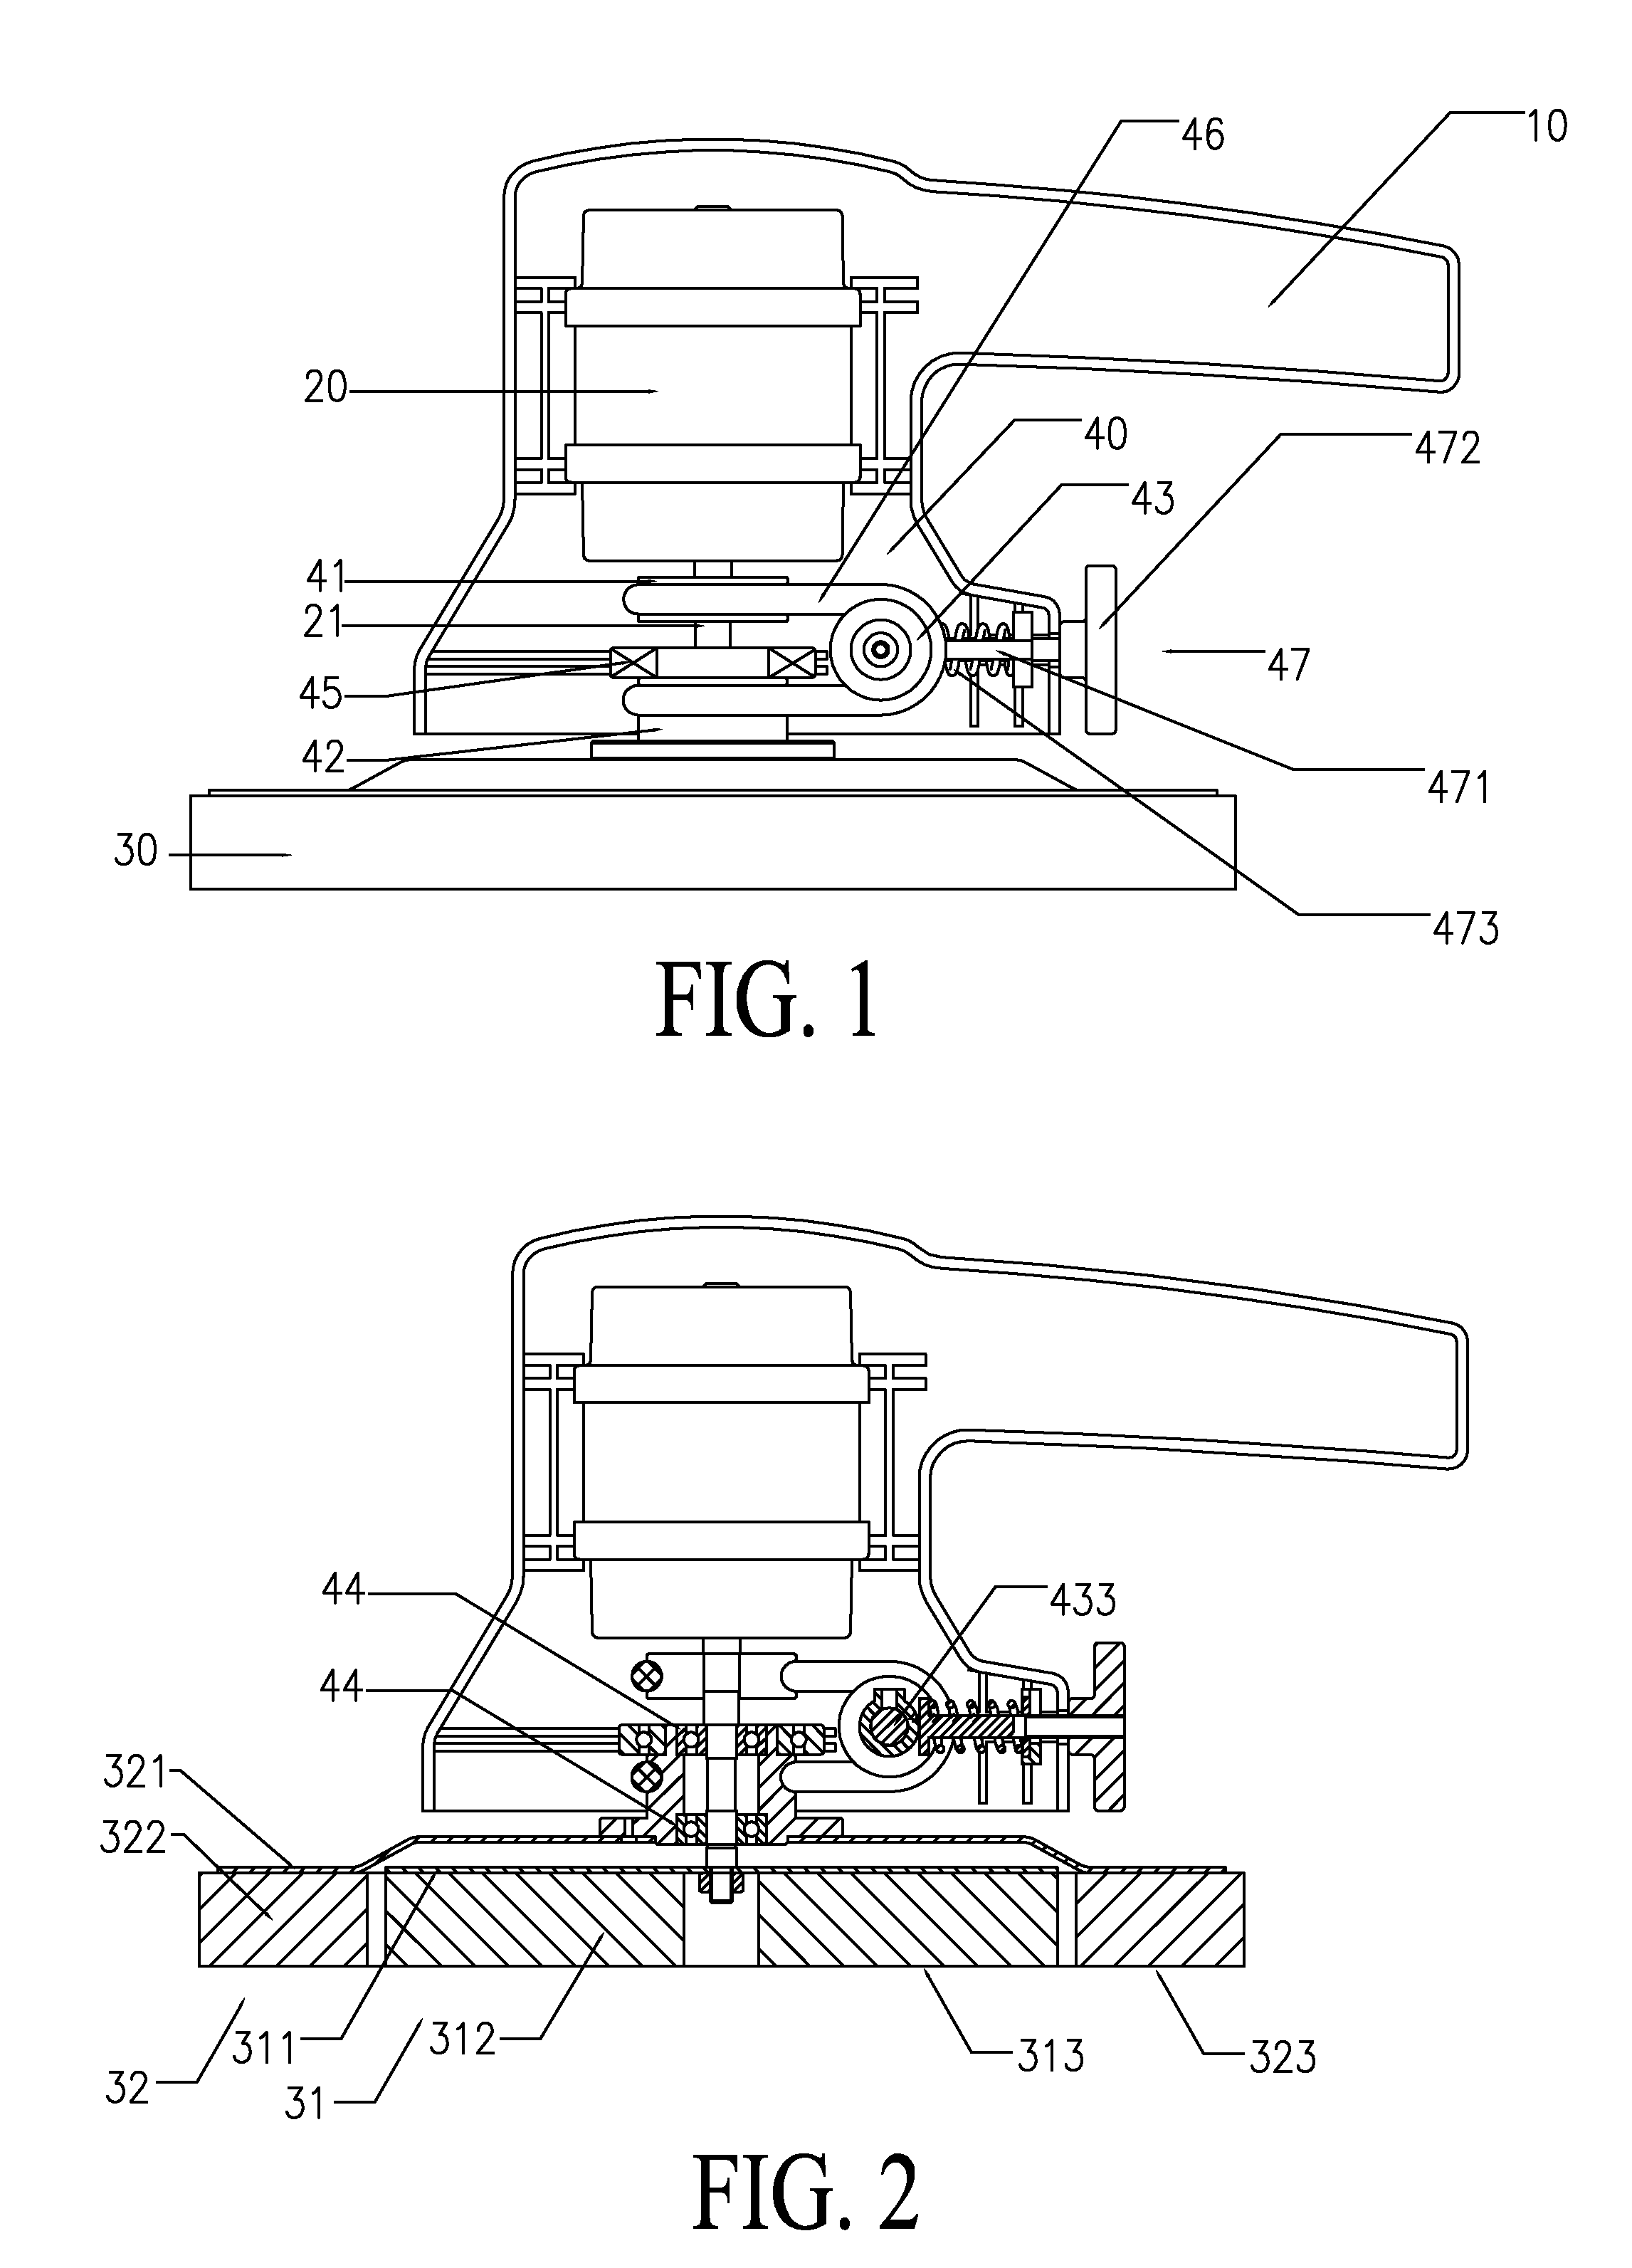 Counter-rotating polisher